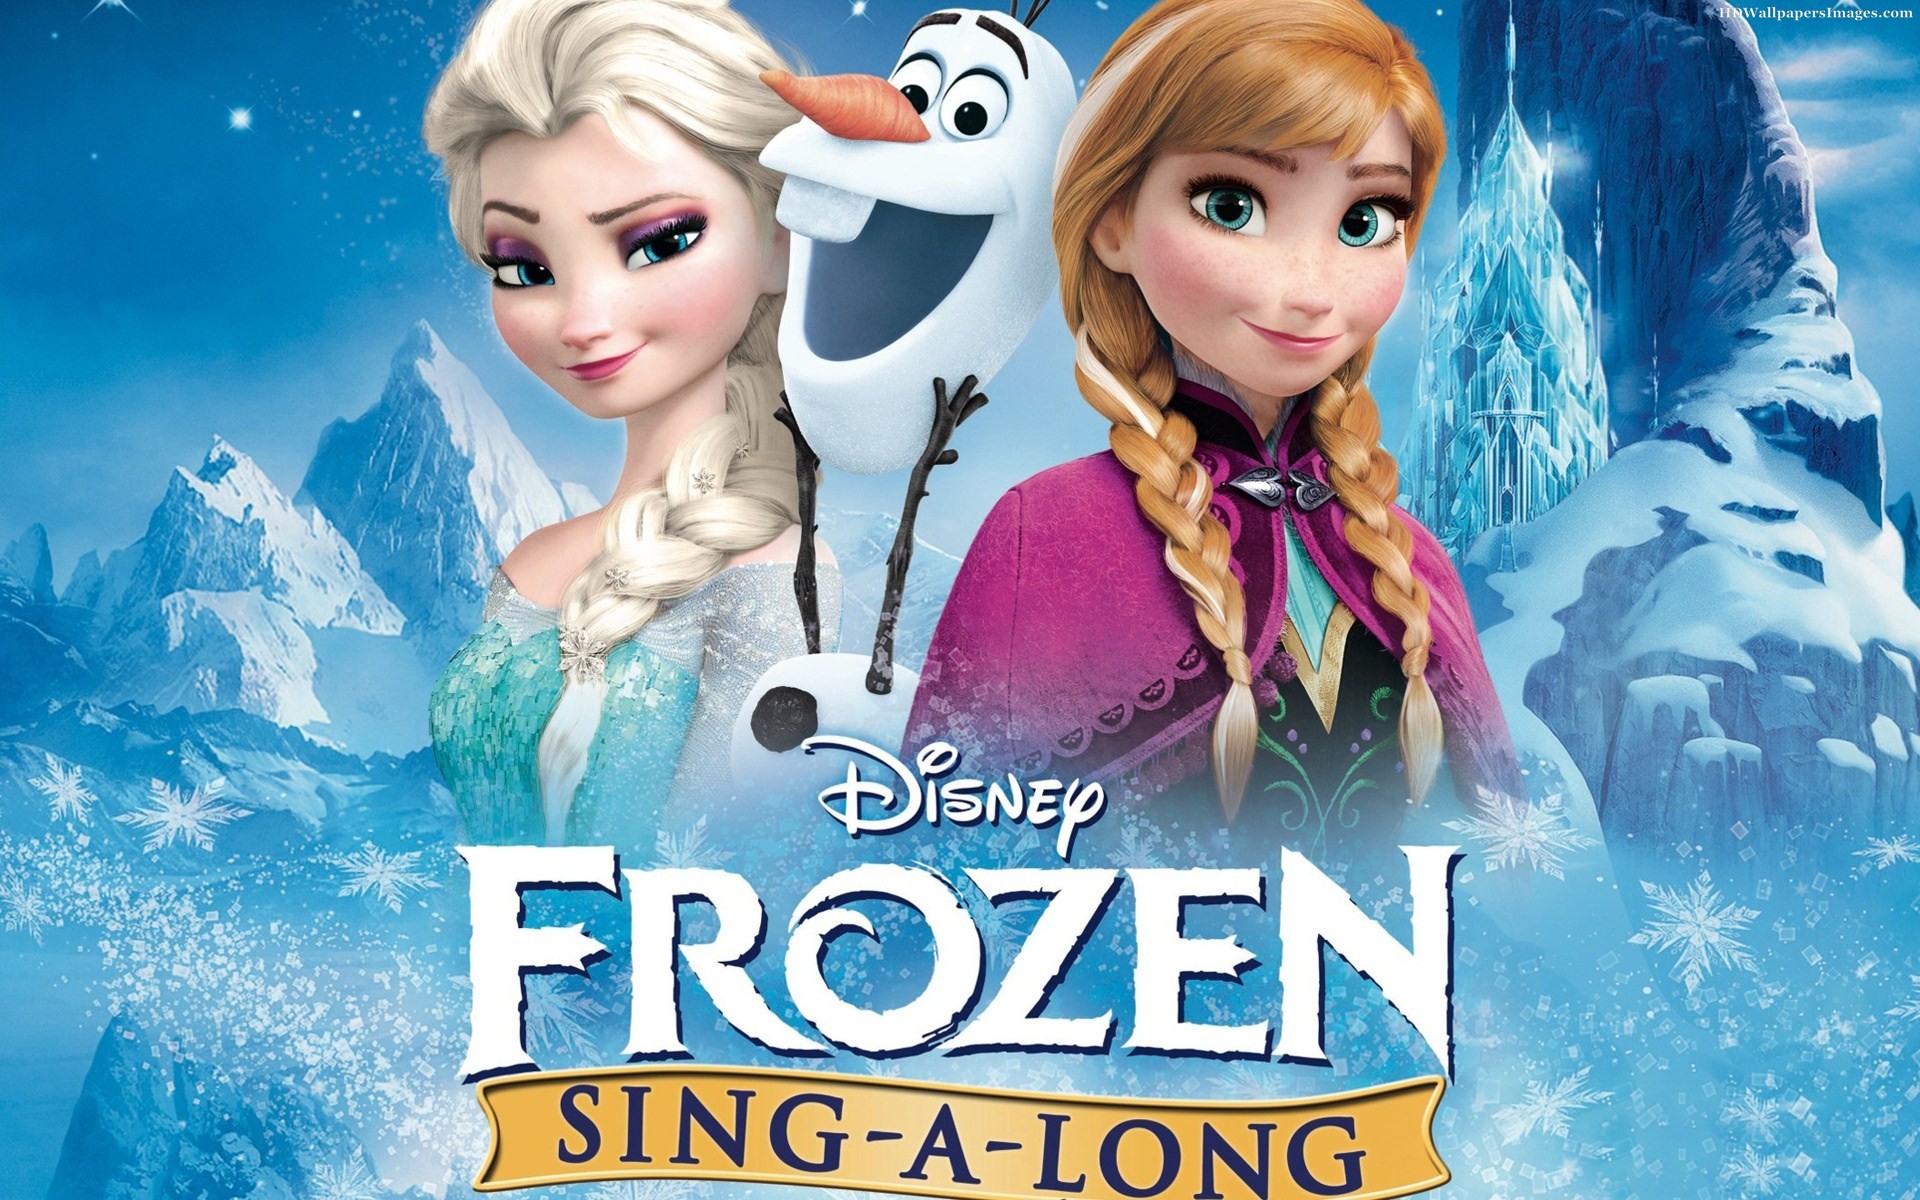 Hình ảnh Elsa: Bạn là một fan hâm mộ của nàng công chúa Elsa? Khám phá ngay hình ảnh Elsa và cùng hóa thân vào những chuyến phiêu lưu tuyệt vời giữa các vùng đất phép thuật và khám phá bản thân mình.